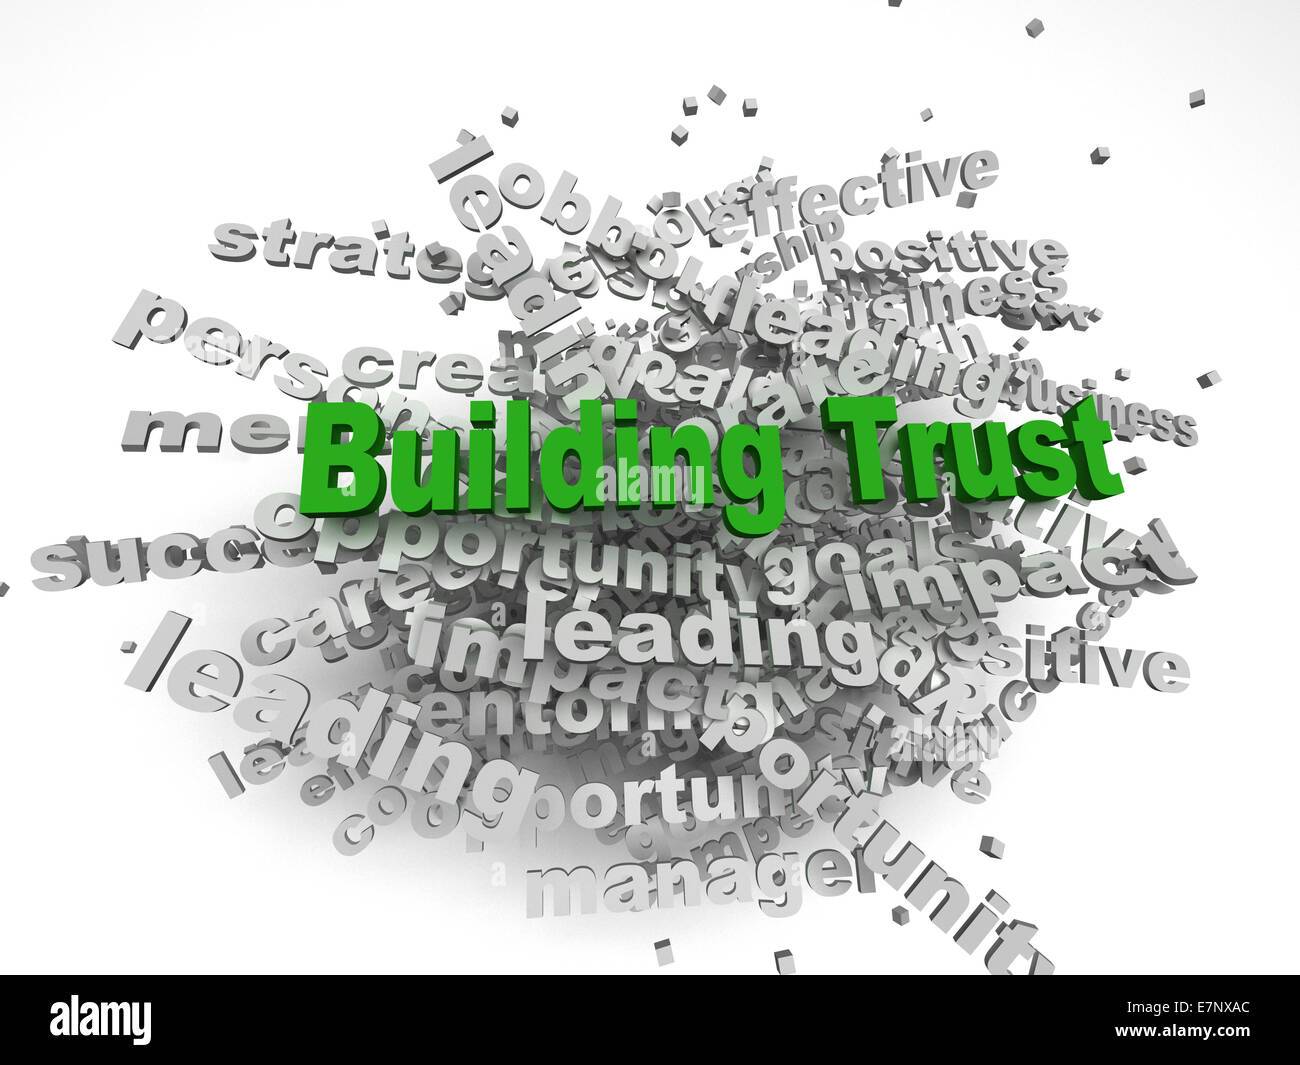 Imagen 3D Building Trust concept dans word tag cloud sur fond blanc Banque D'Images